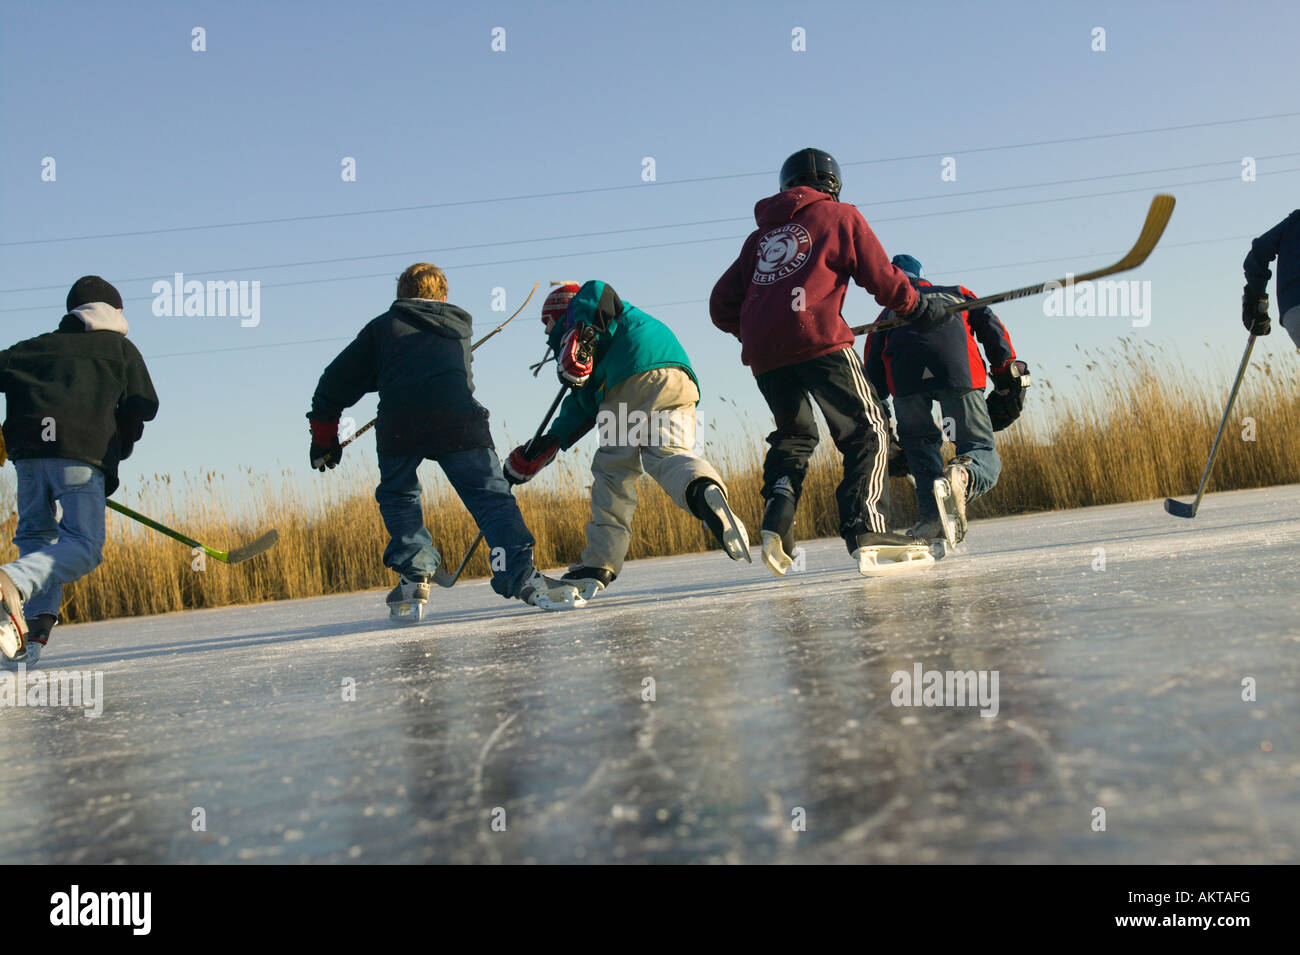 Boys Skating on Frozen Pond Stock Photo